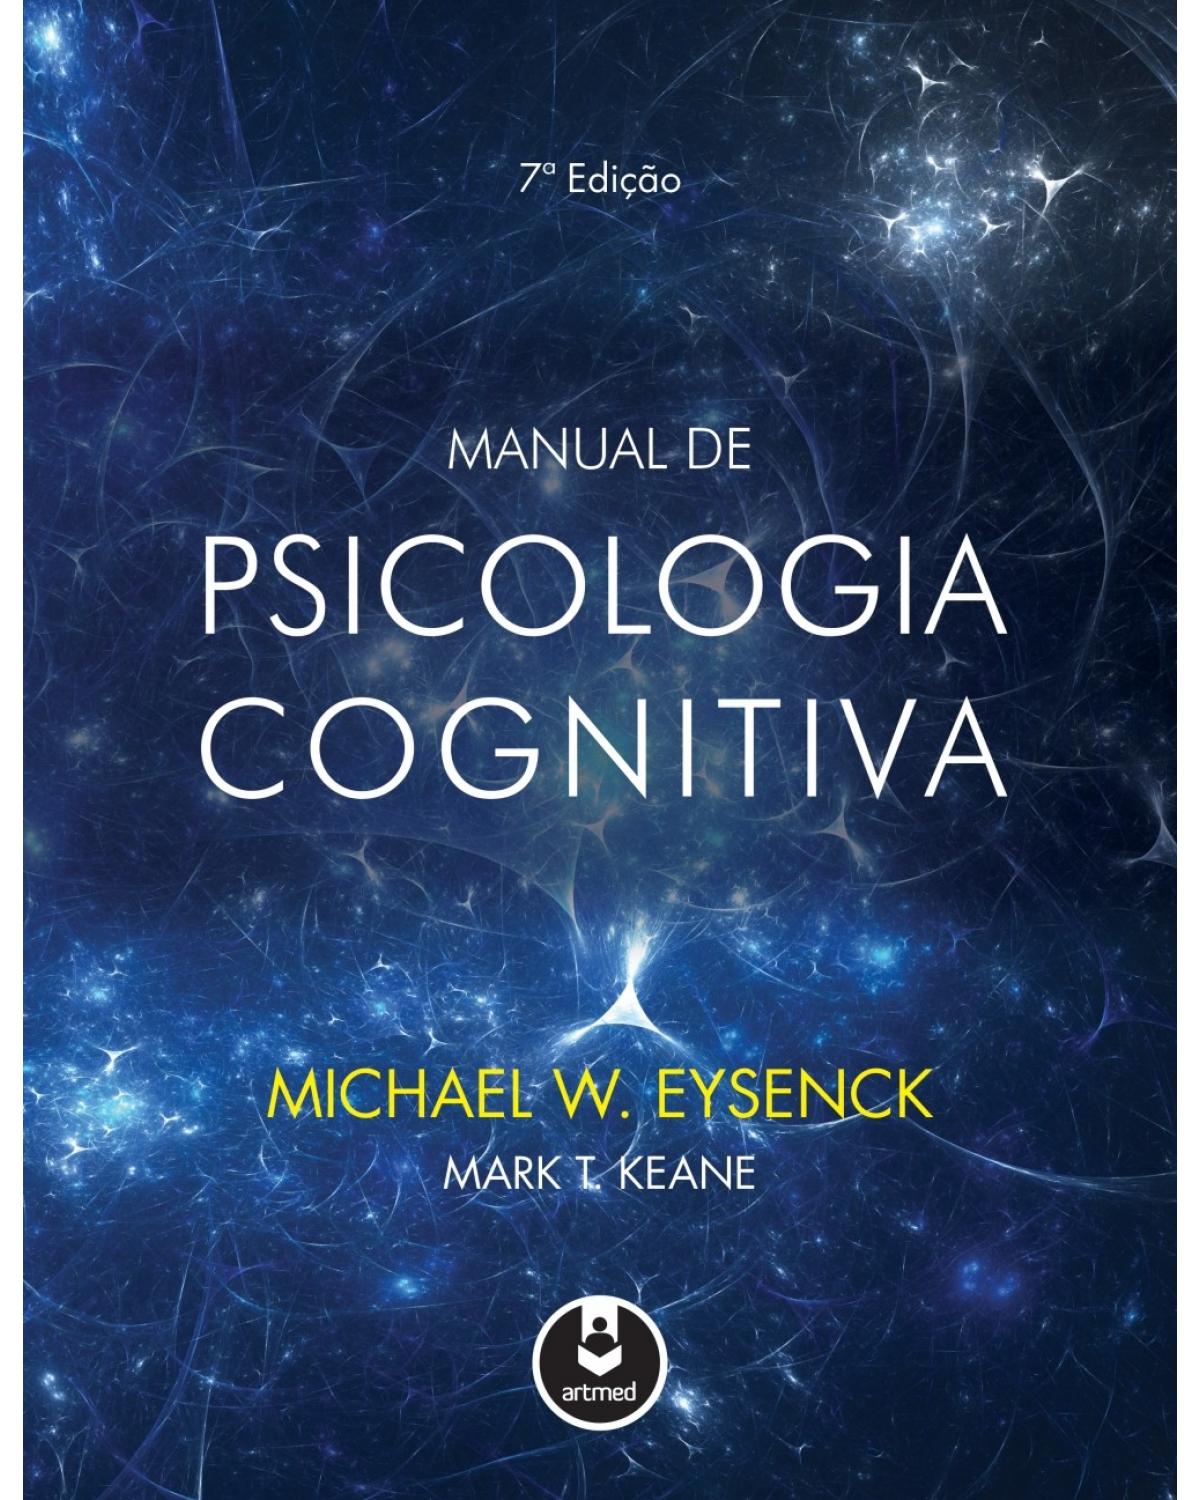 Manual de psicologia cognitiva - 7ª Edição | 2017